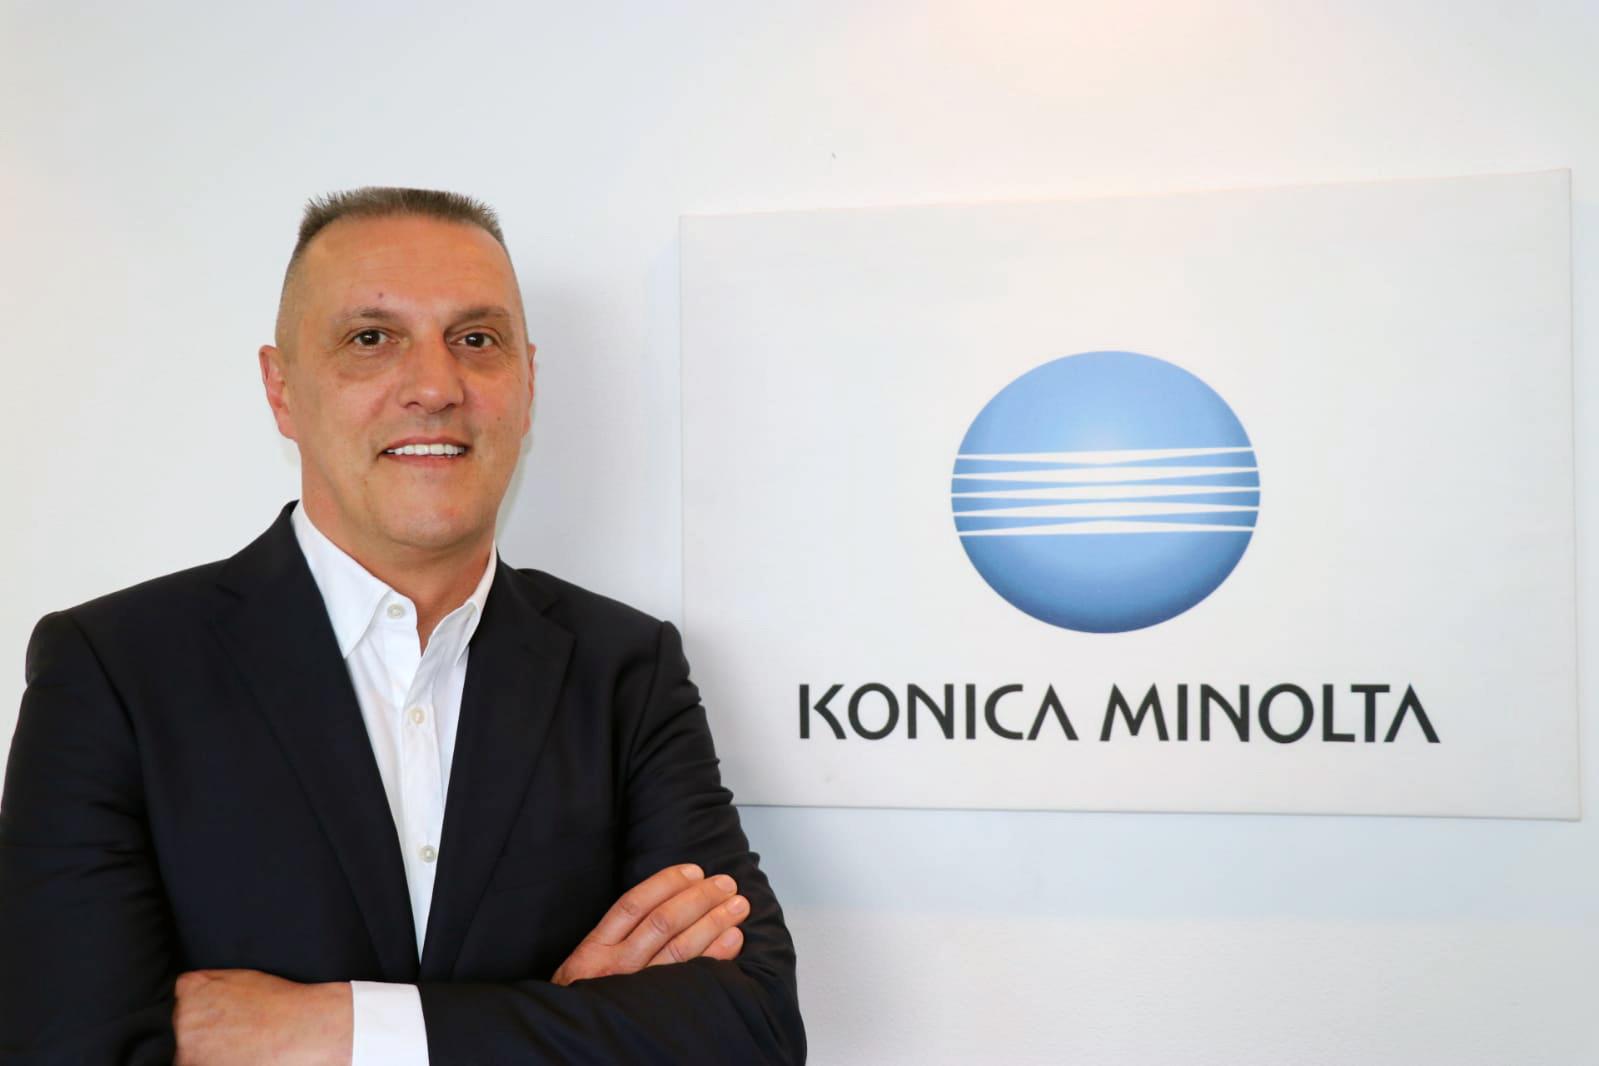 Stipulata la fusione tra Konica Minolta Business Solutions Italia e Konica Minolta IJ Textile Europe